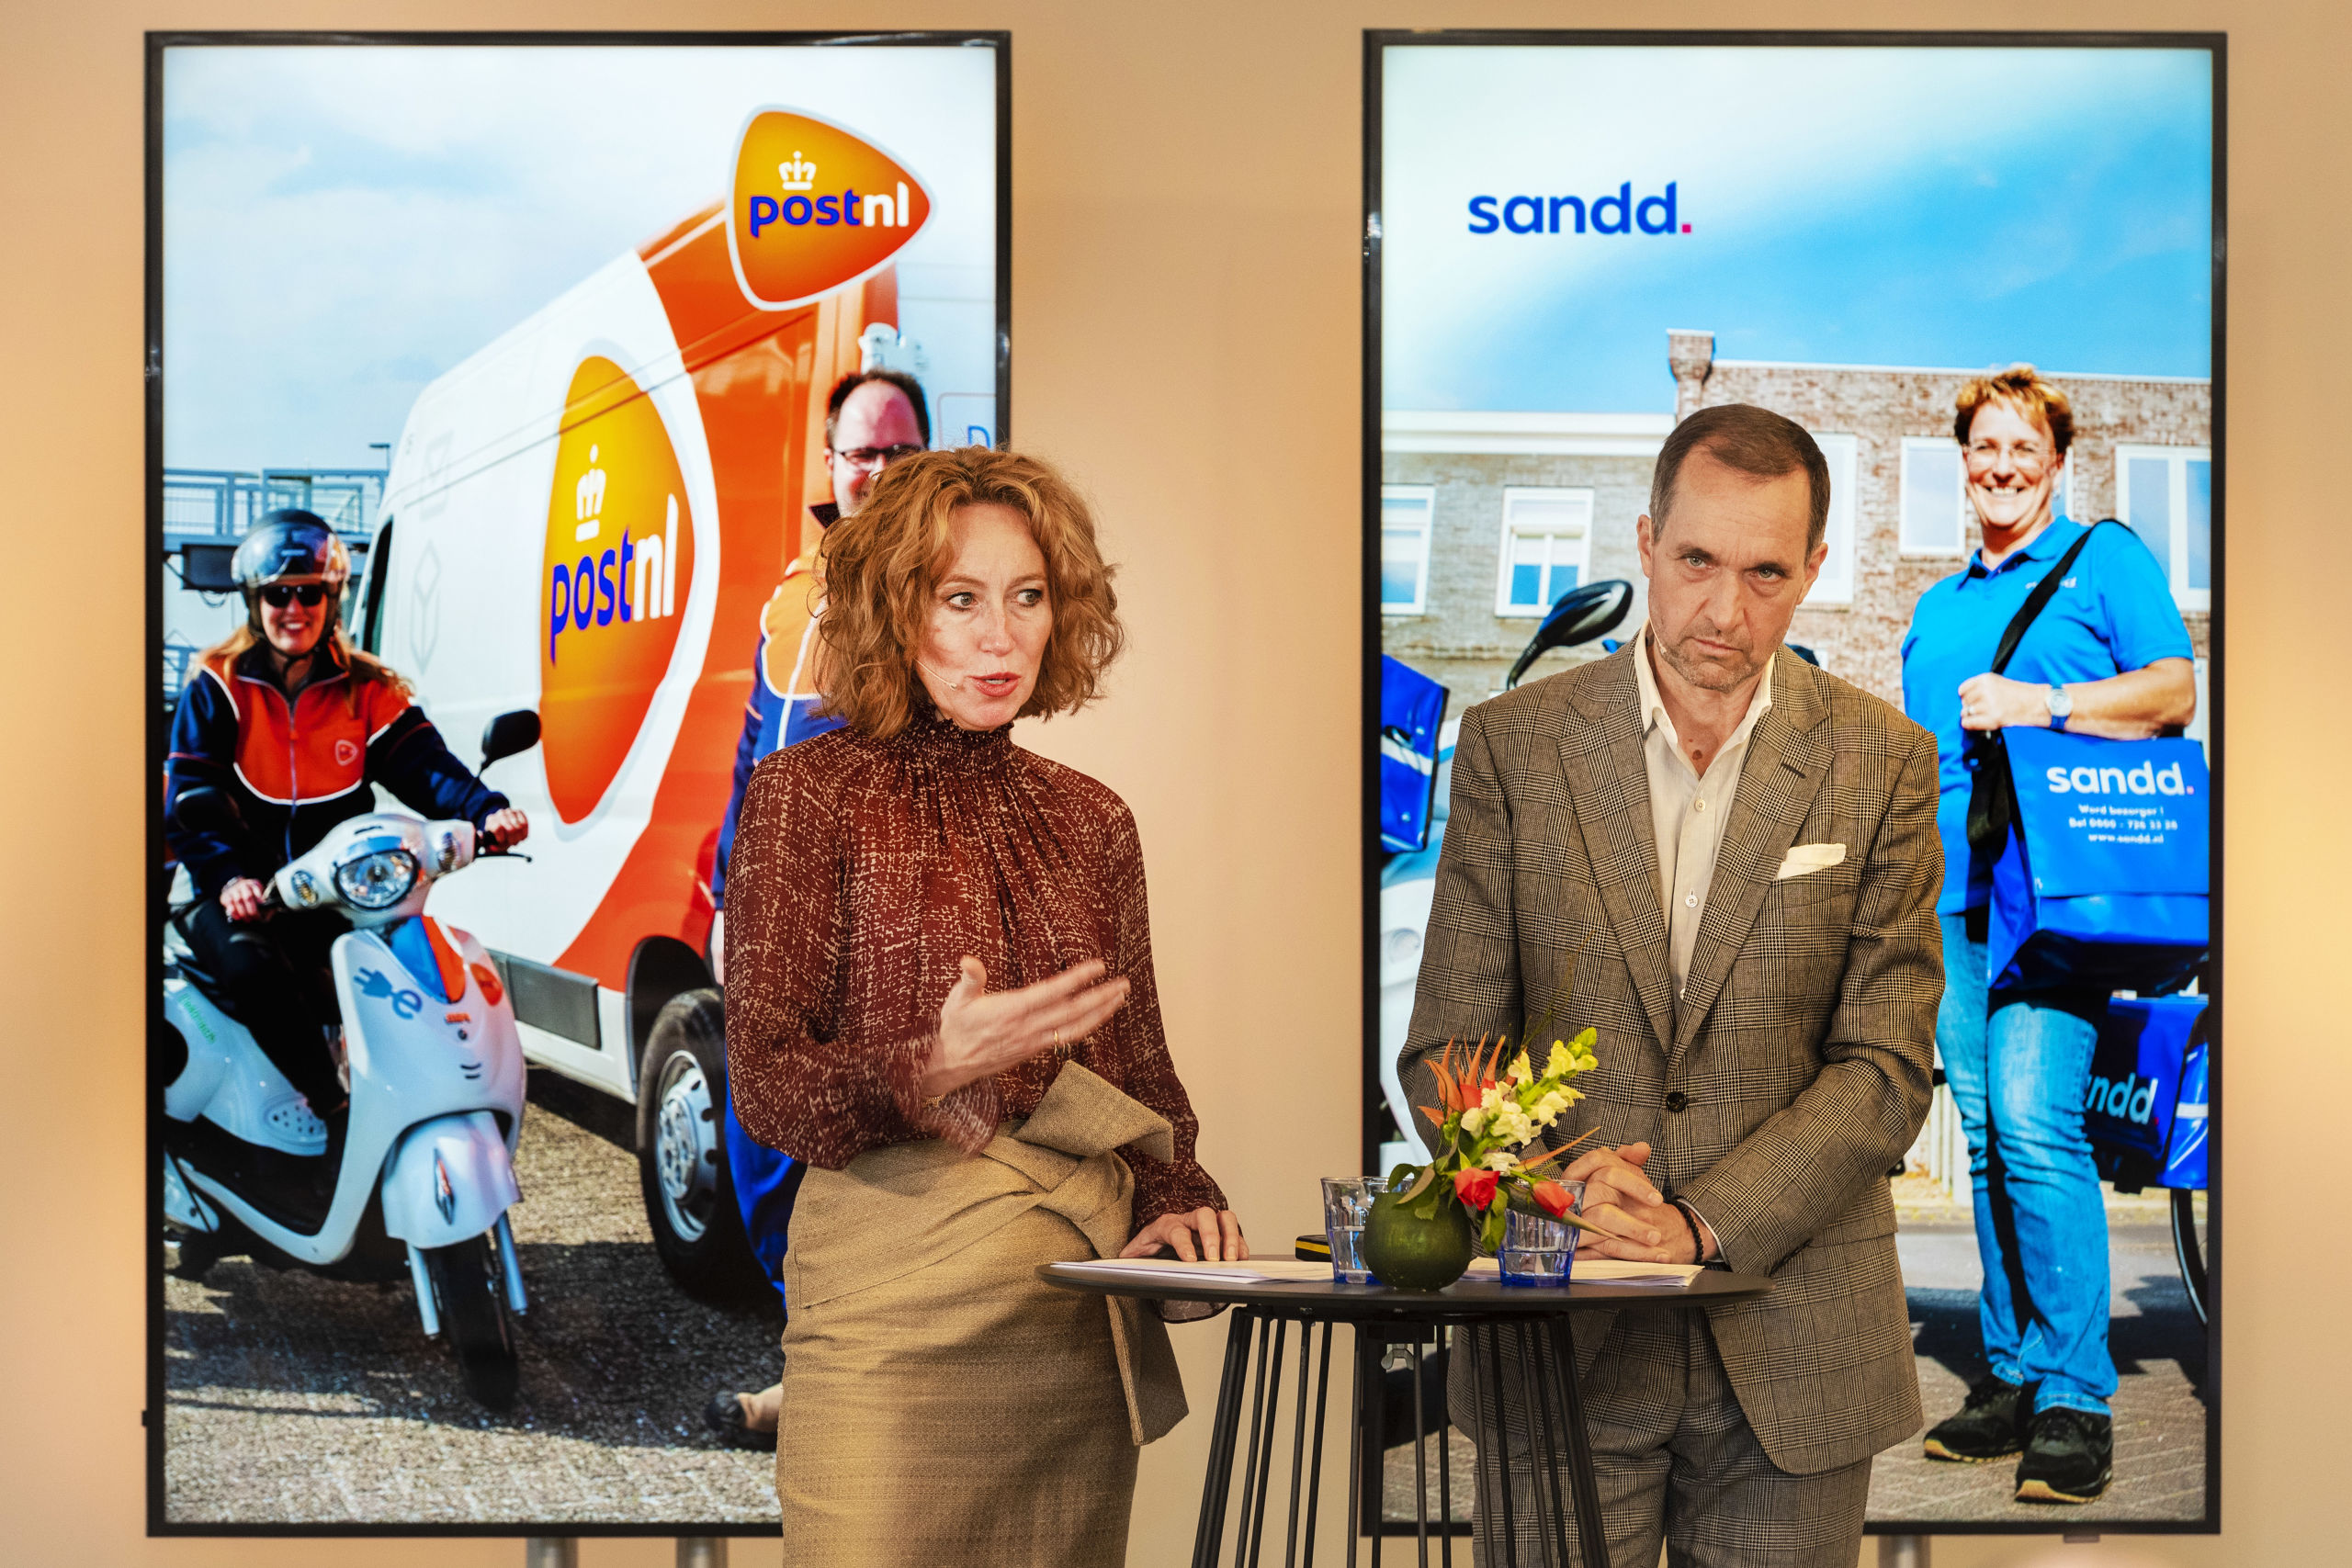 Herna Verhagen, CEO van PostNL en Ronald van de Laar, directeur van Sandd Holding geven een toelichting op de voorgenomen samenvoeging van de postnetwerken van PostNL en Sandd. 